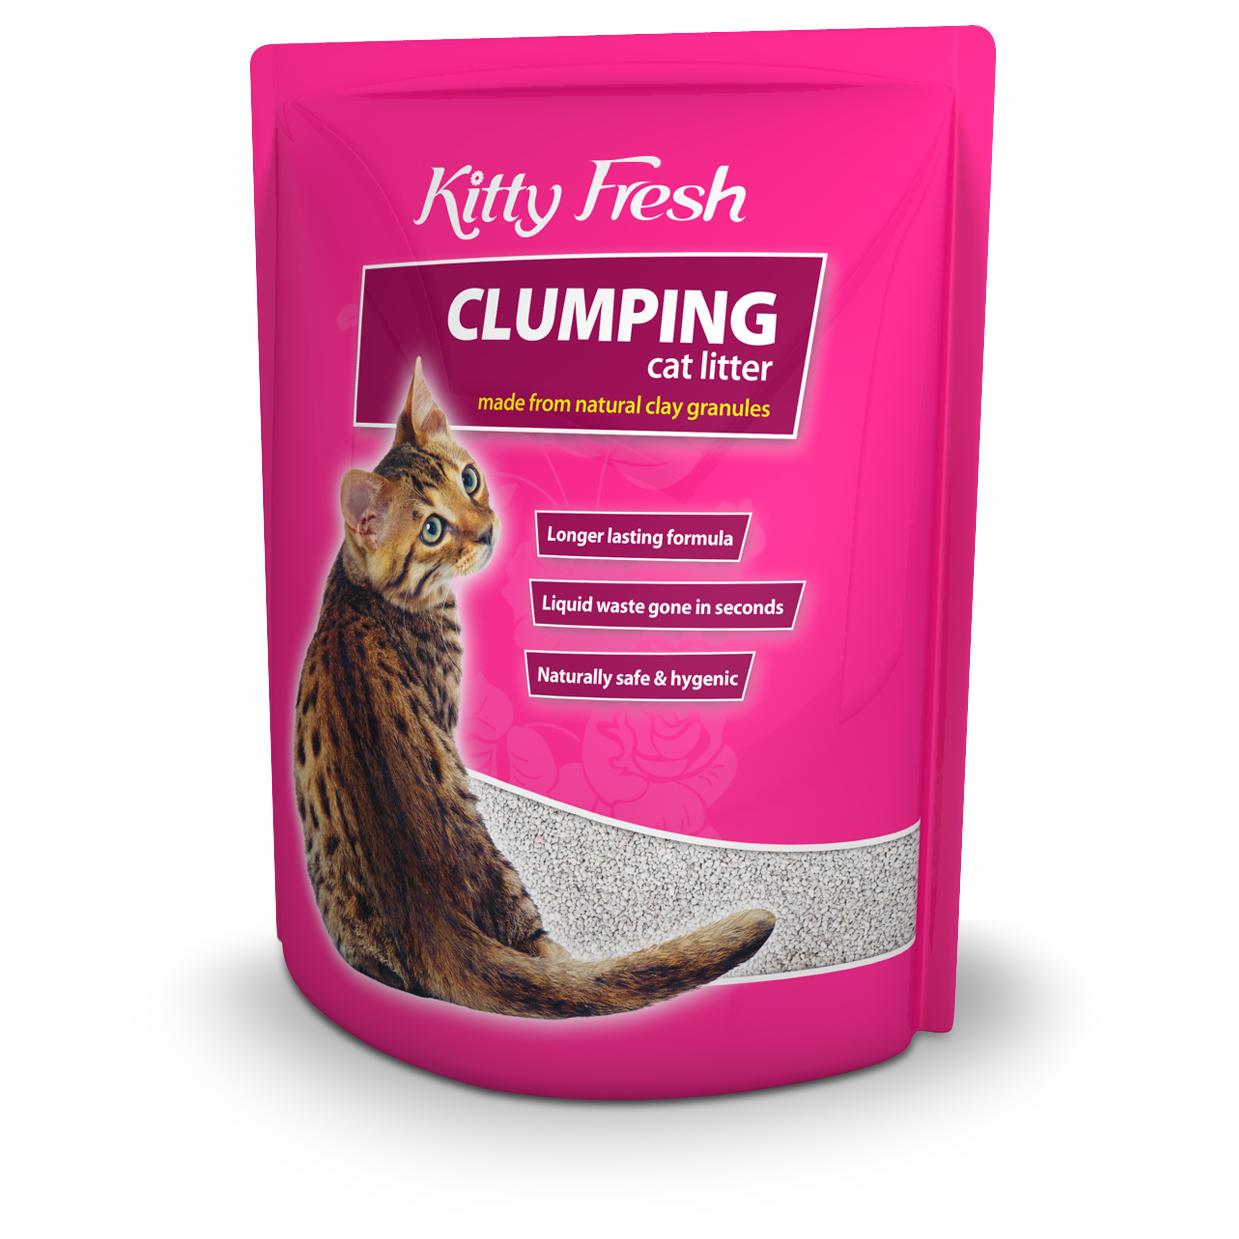 Kitty Fresh Clumping Cat Litter